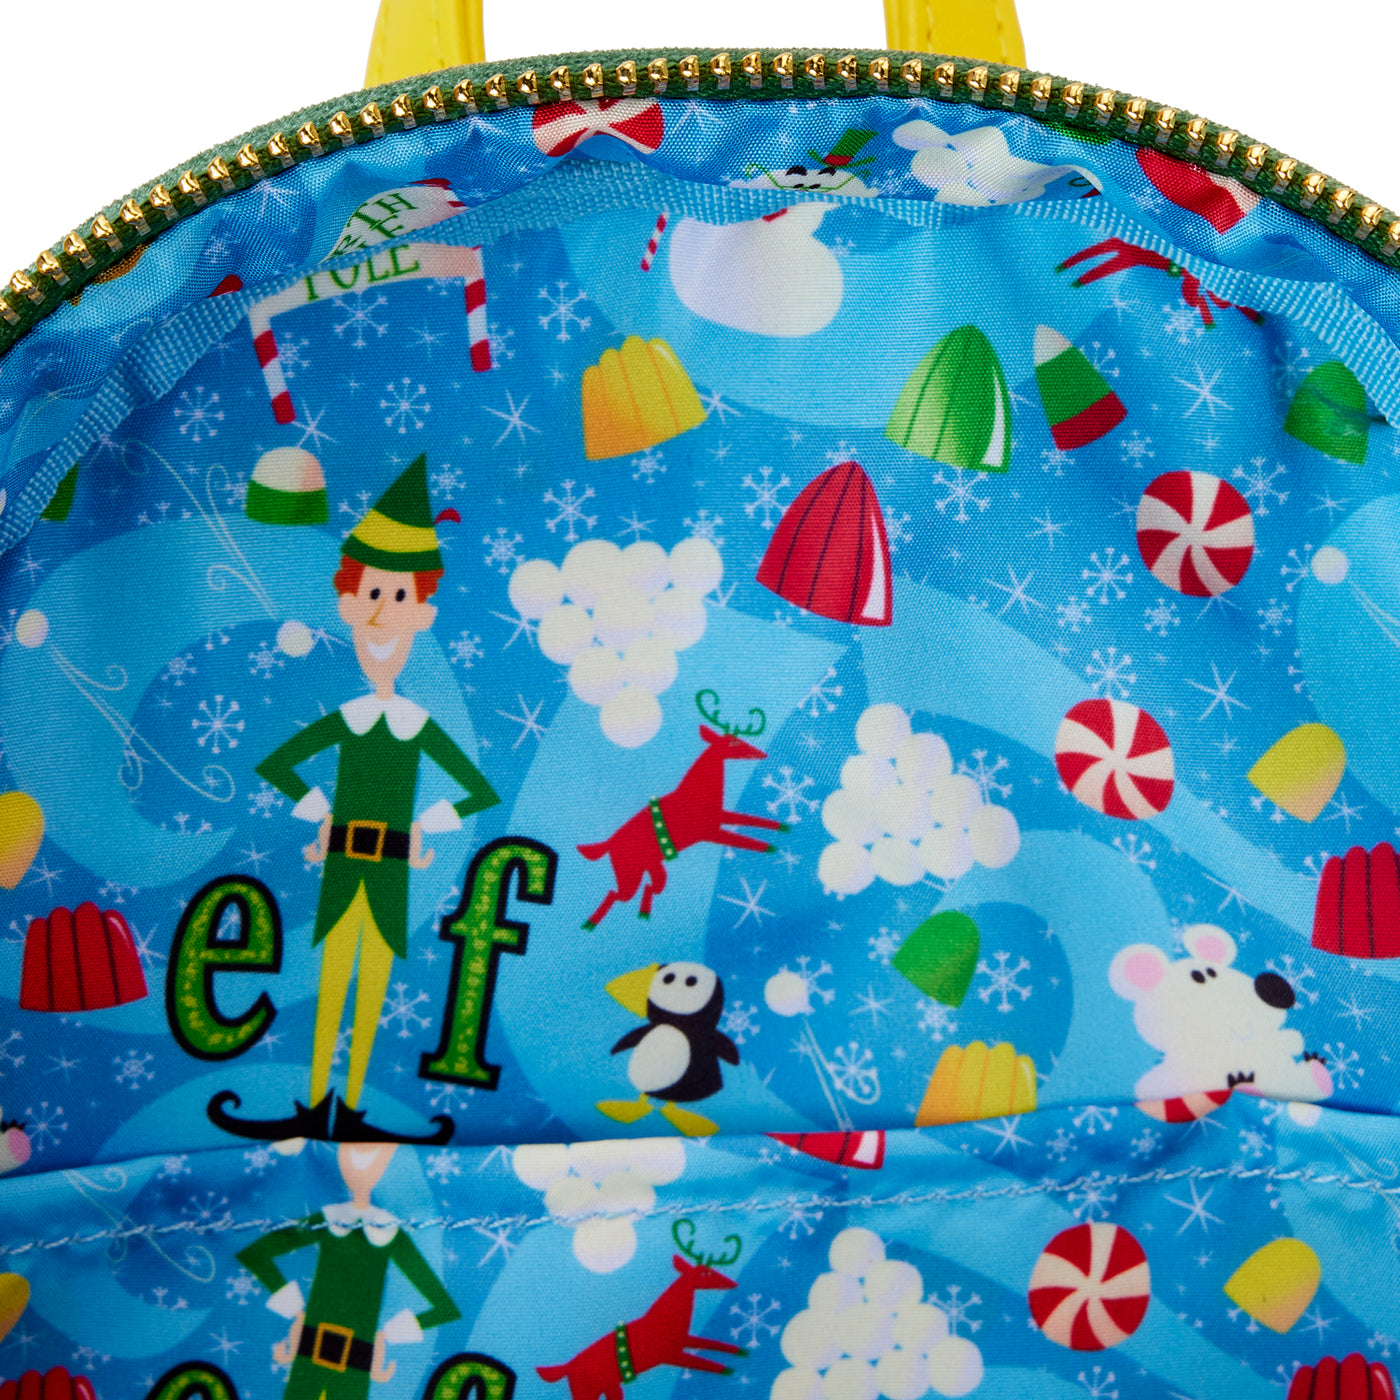 WB Elf 20th Anniversary Cosplay Mini Backpack